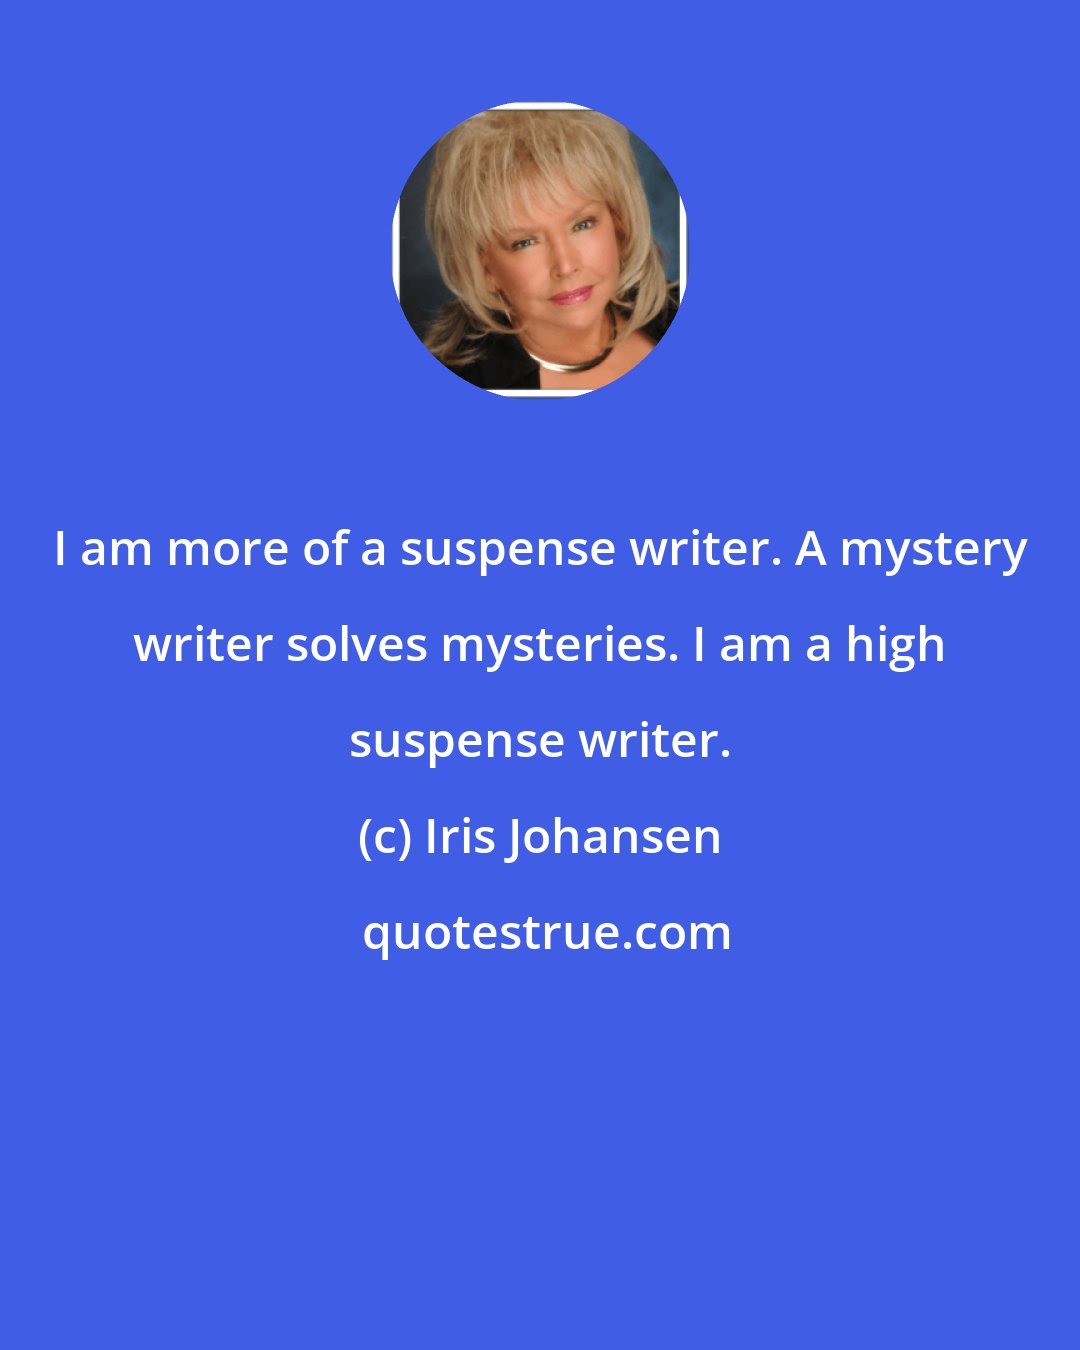 Iris Johansen: I am more of a suspense writer. A mystery writer solves mysteries. I am a high suspense writer.